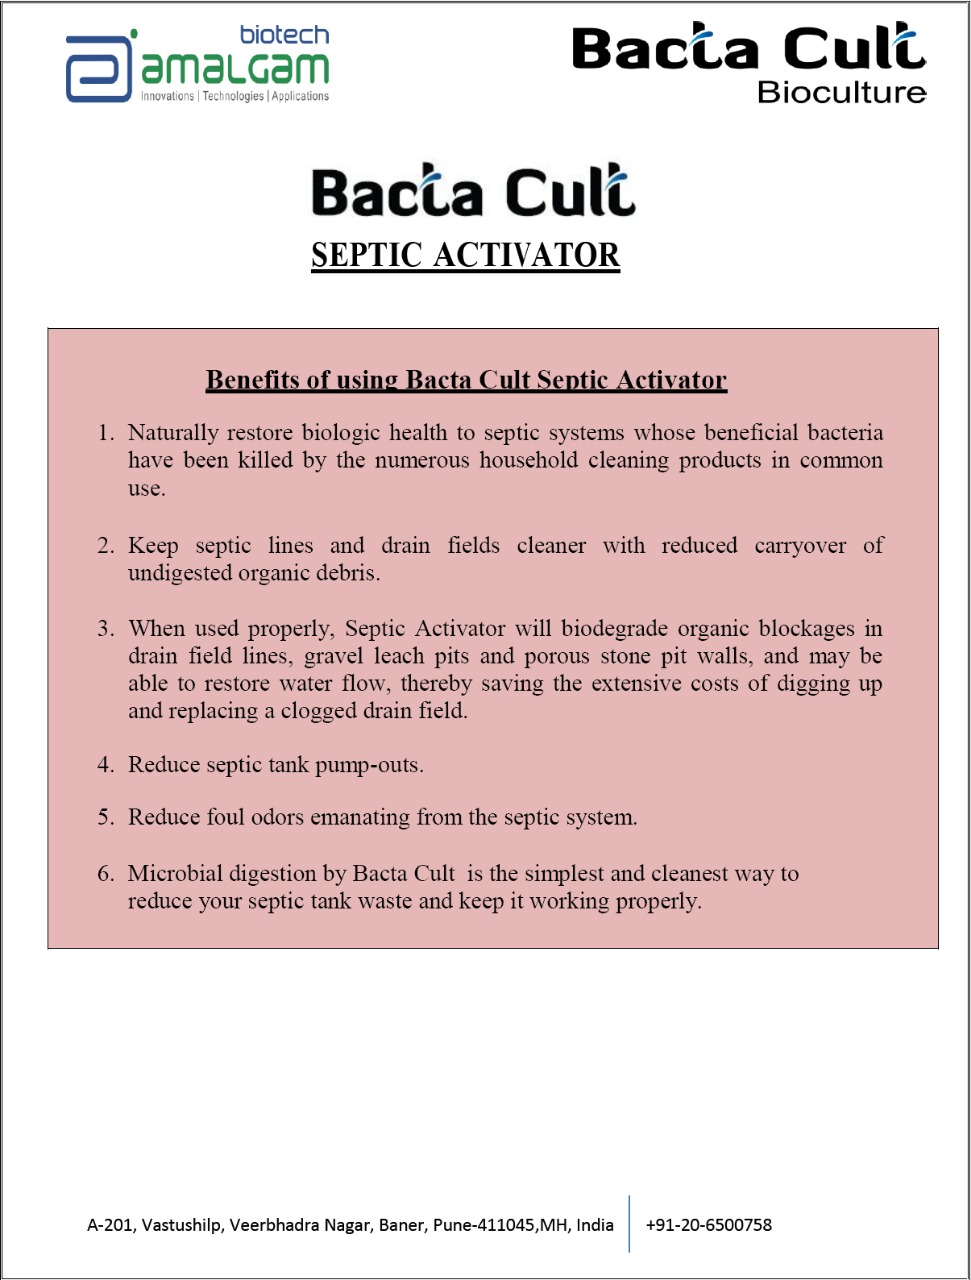 BACTA CULT Septic Activator